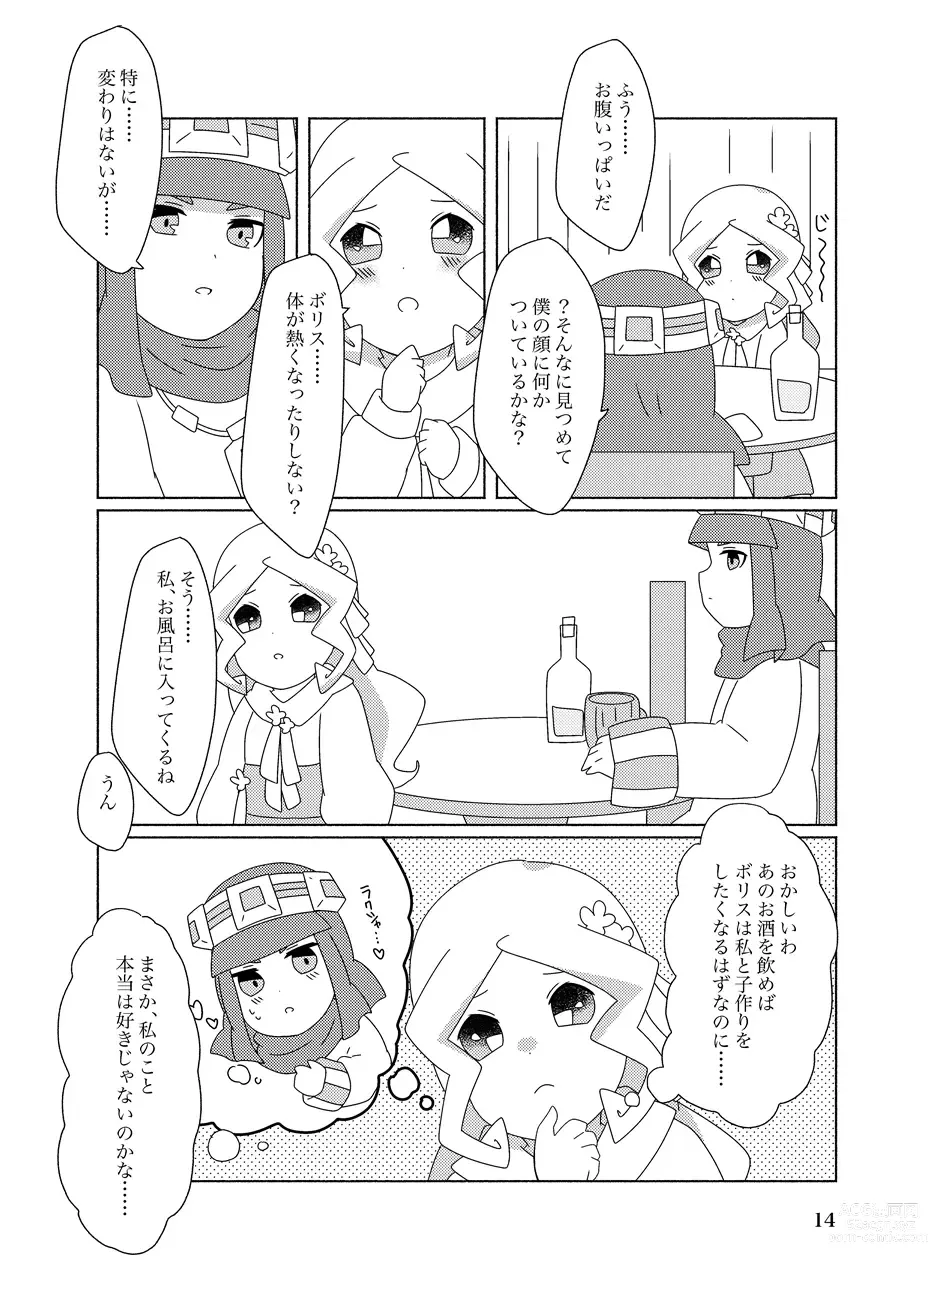 Page 14 of doujinshi Hachimitsu Sake to Milk